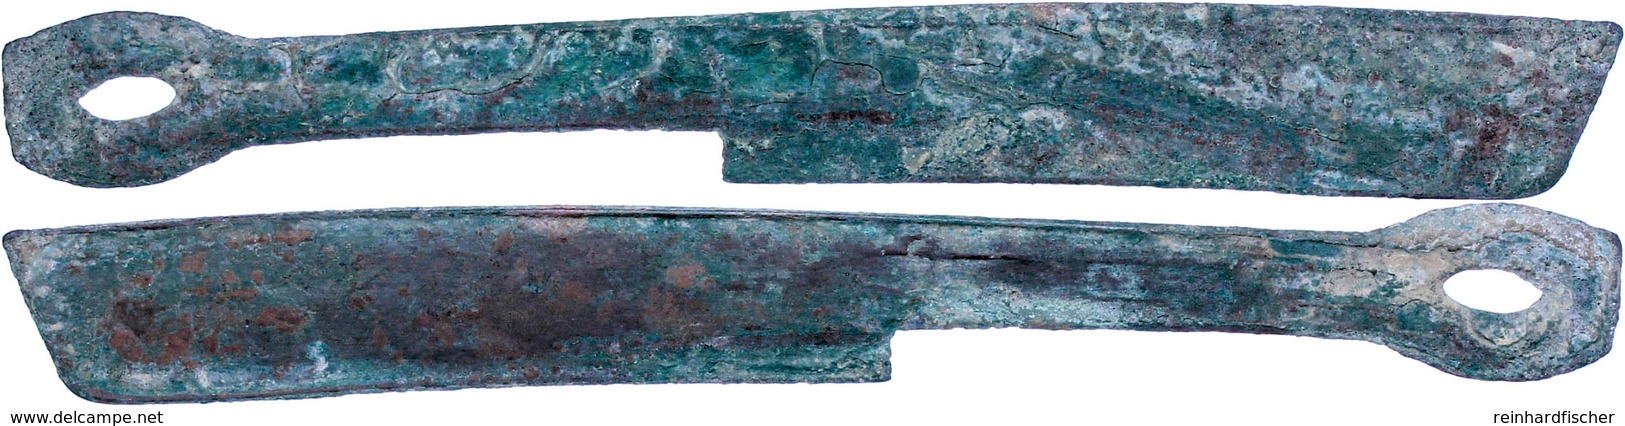 Zhou-Dynastie, 1122-220 V. Chr., Æ-Messergeld (10,81g), Sog. Strait Knive Money, 400-250 V. Chr., Vgl. Opitz S. 186, Sch - Chinese